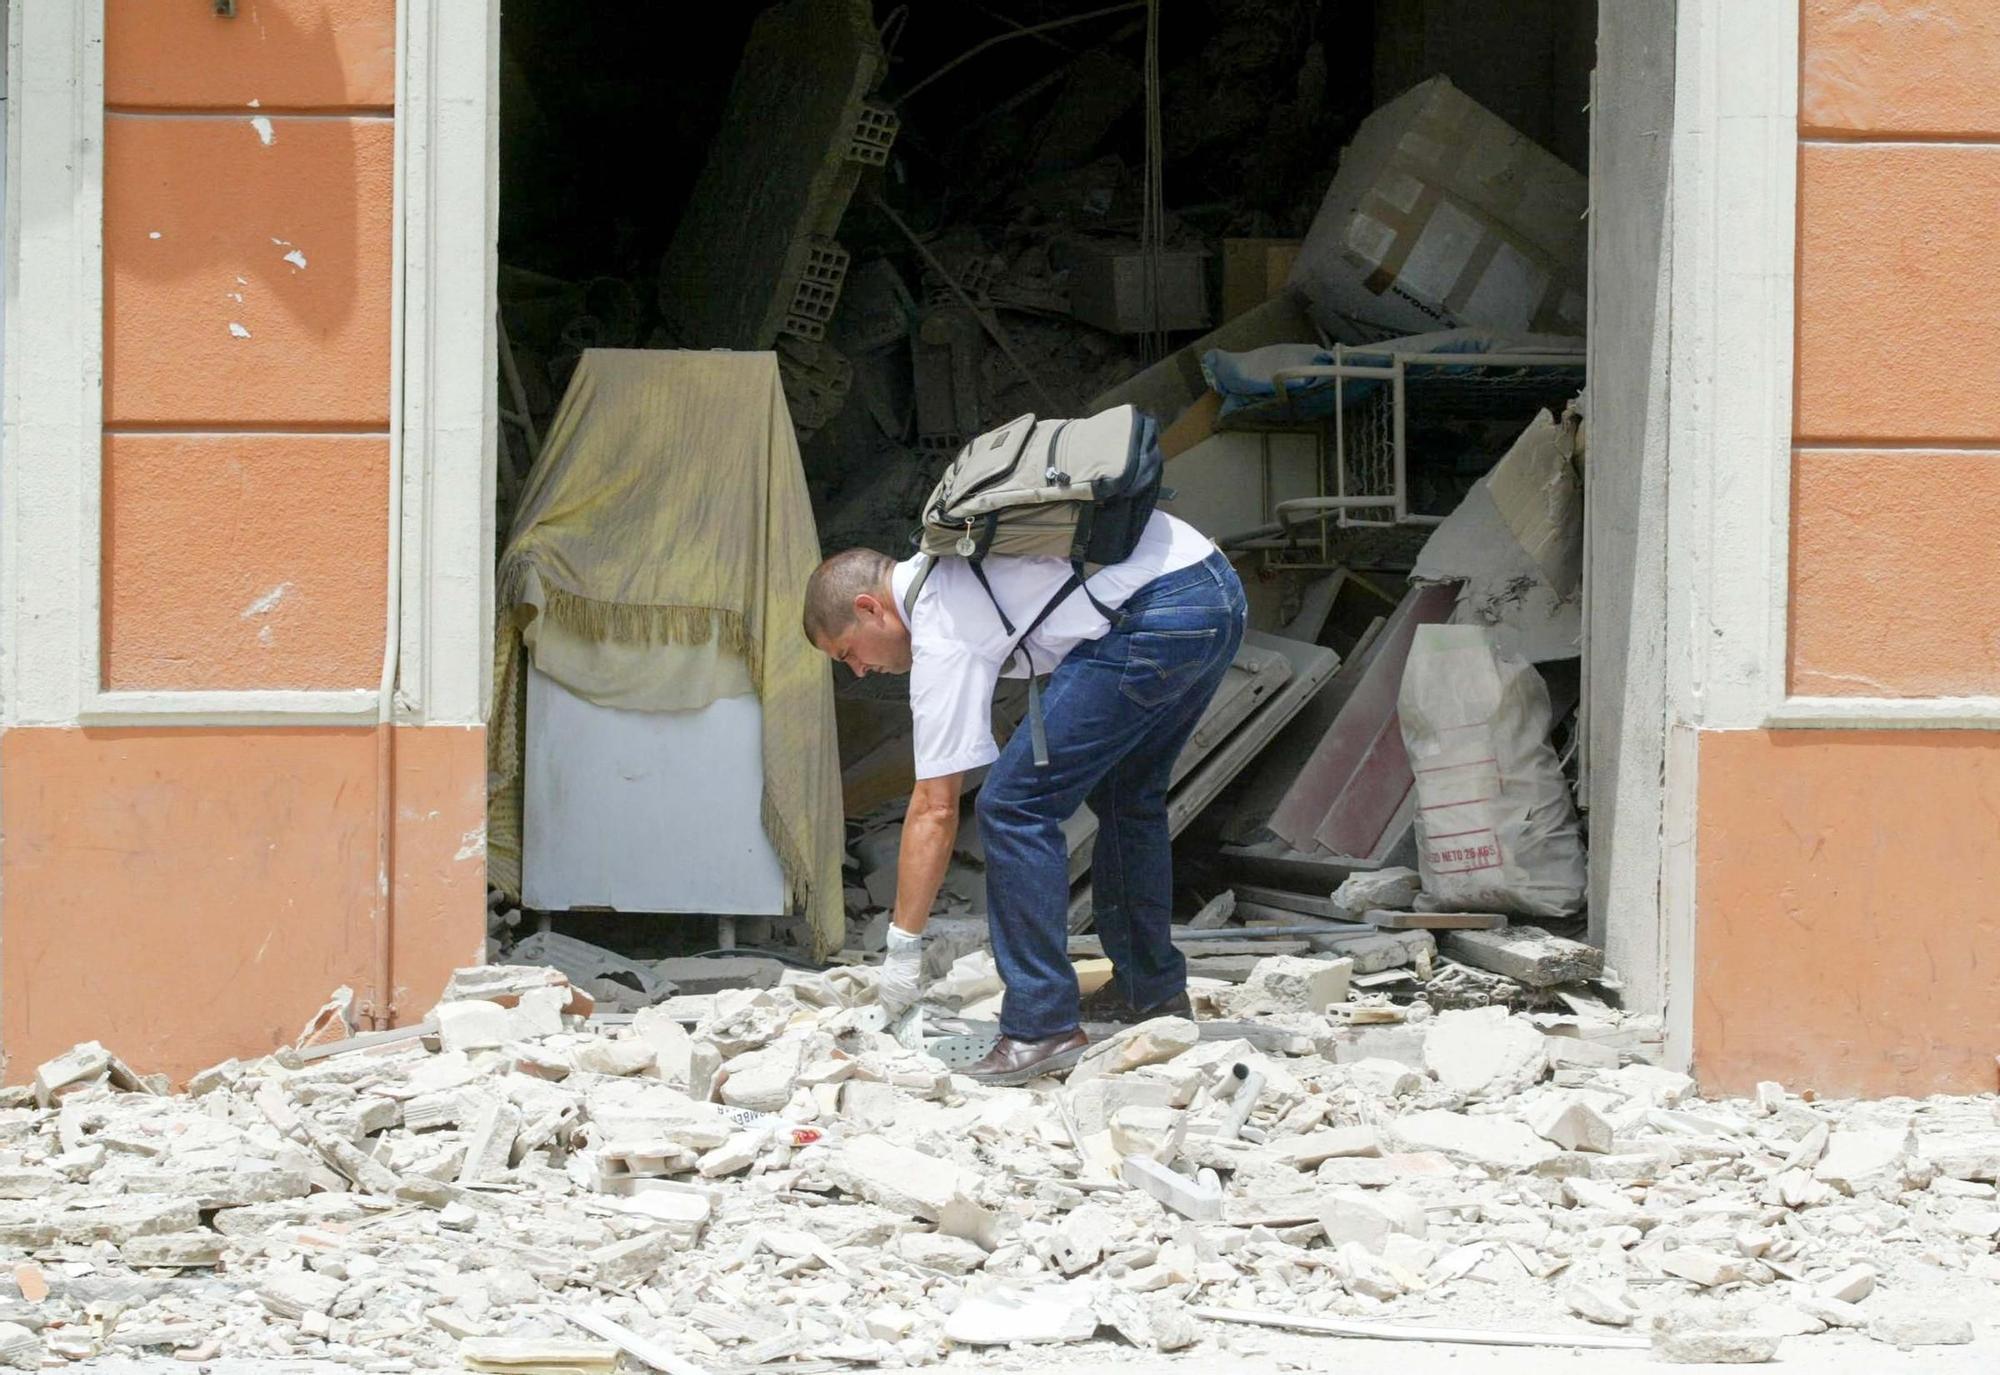 Estas son las fotos del hotel Bahia, uno de los dos atentados que cometió el etarra Asier Eceiza en 2003 en Alicante y Benidorm por los que ha sido condenado a a 182 años de carcel